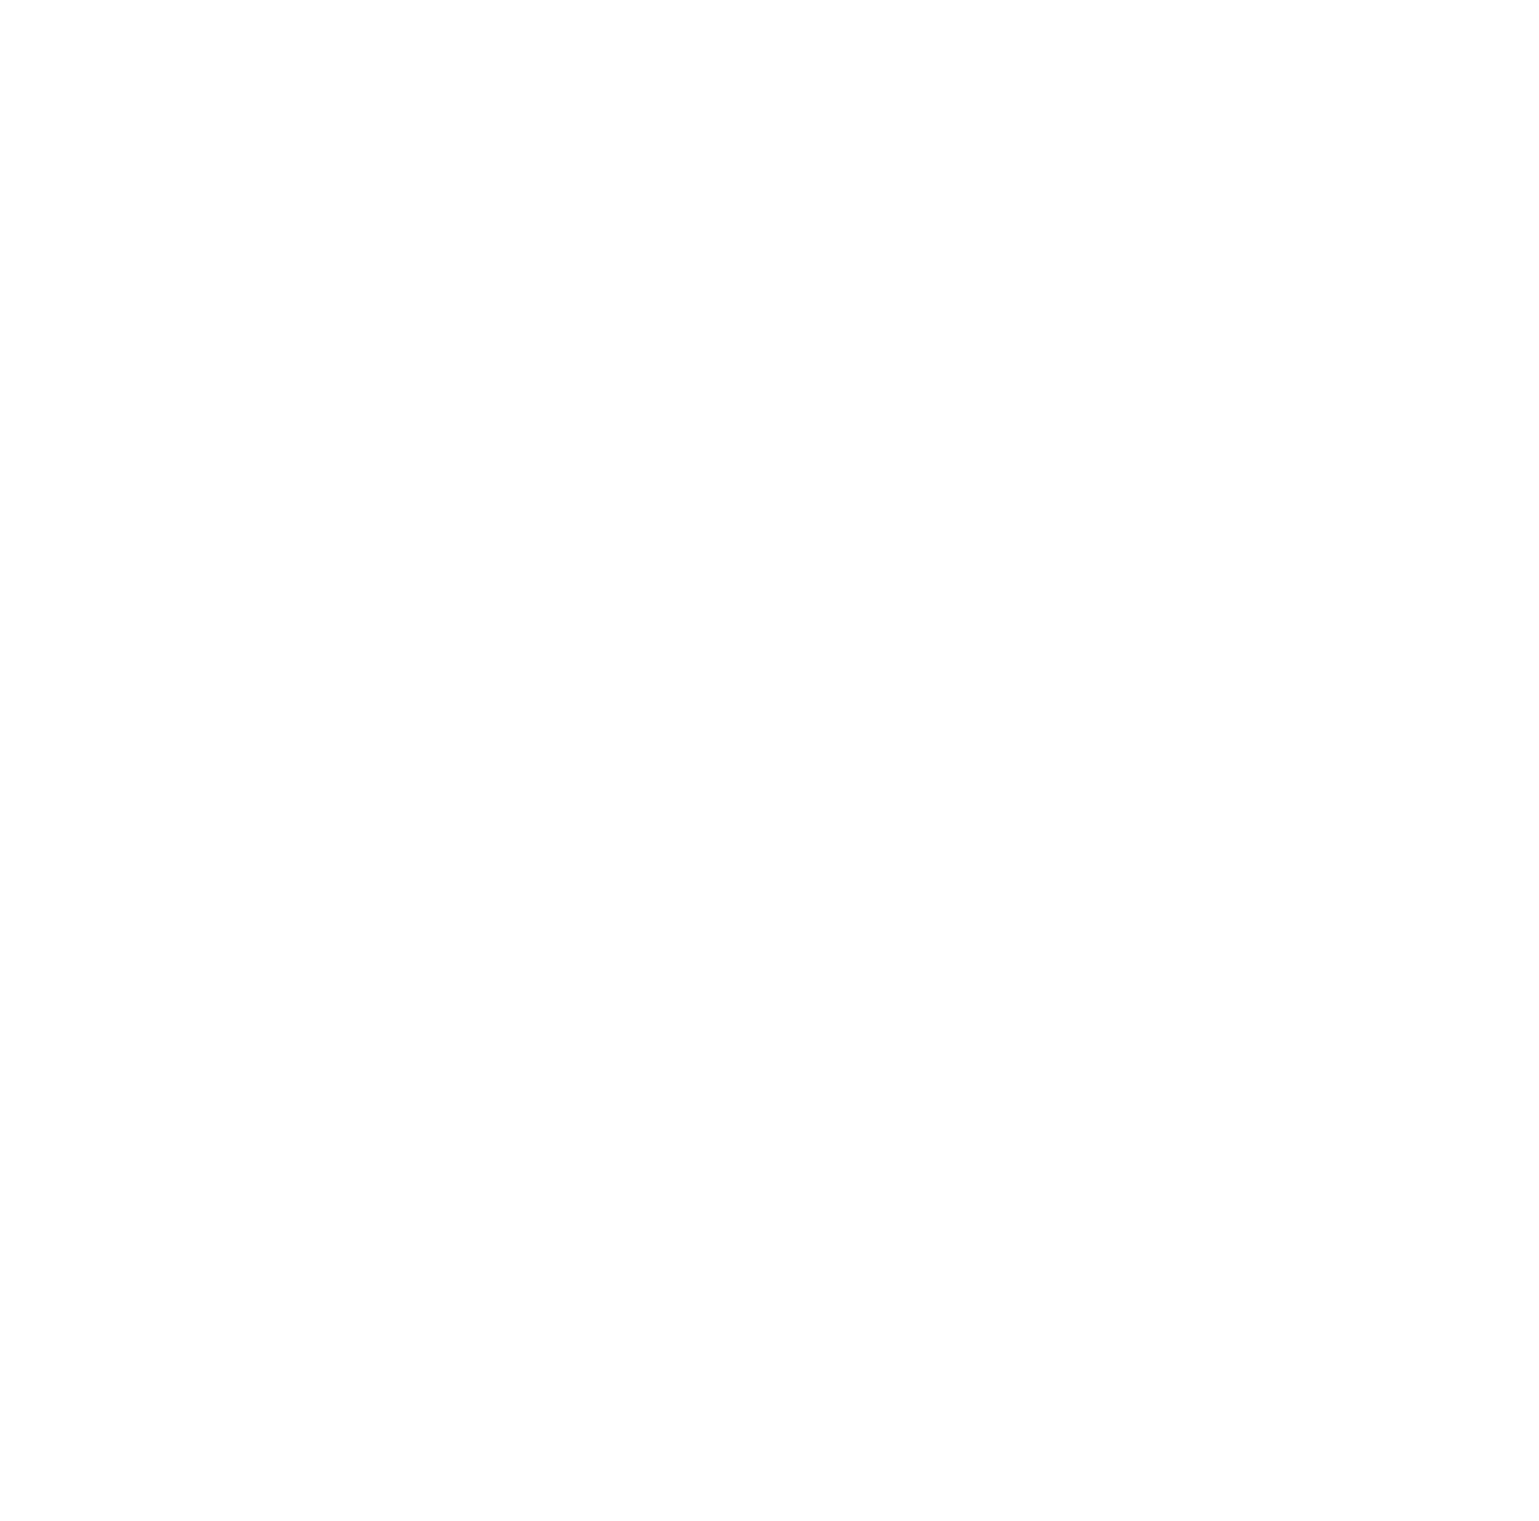 A2A logo pour fonds sombres (PNG transparent)